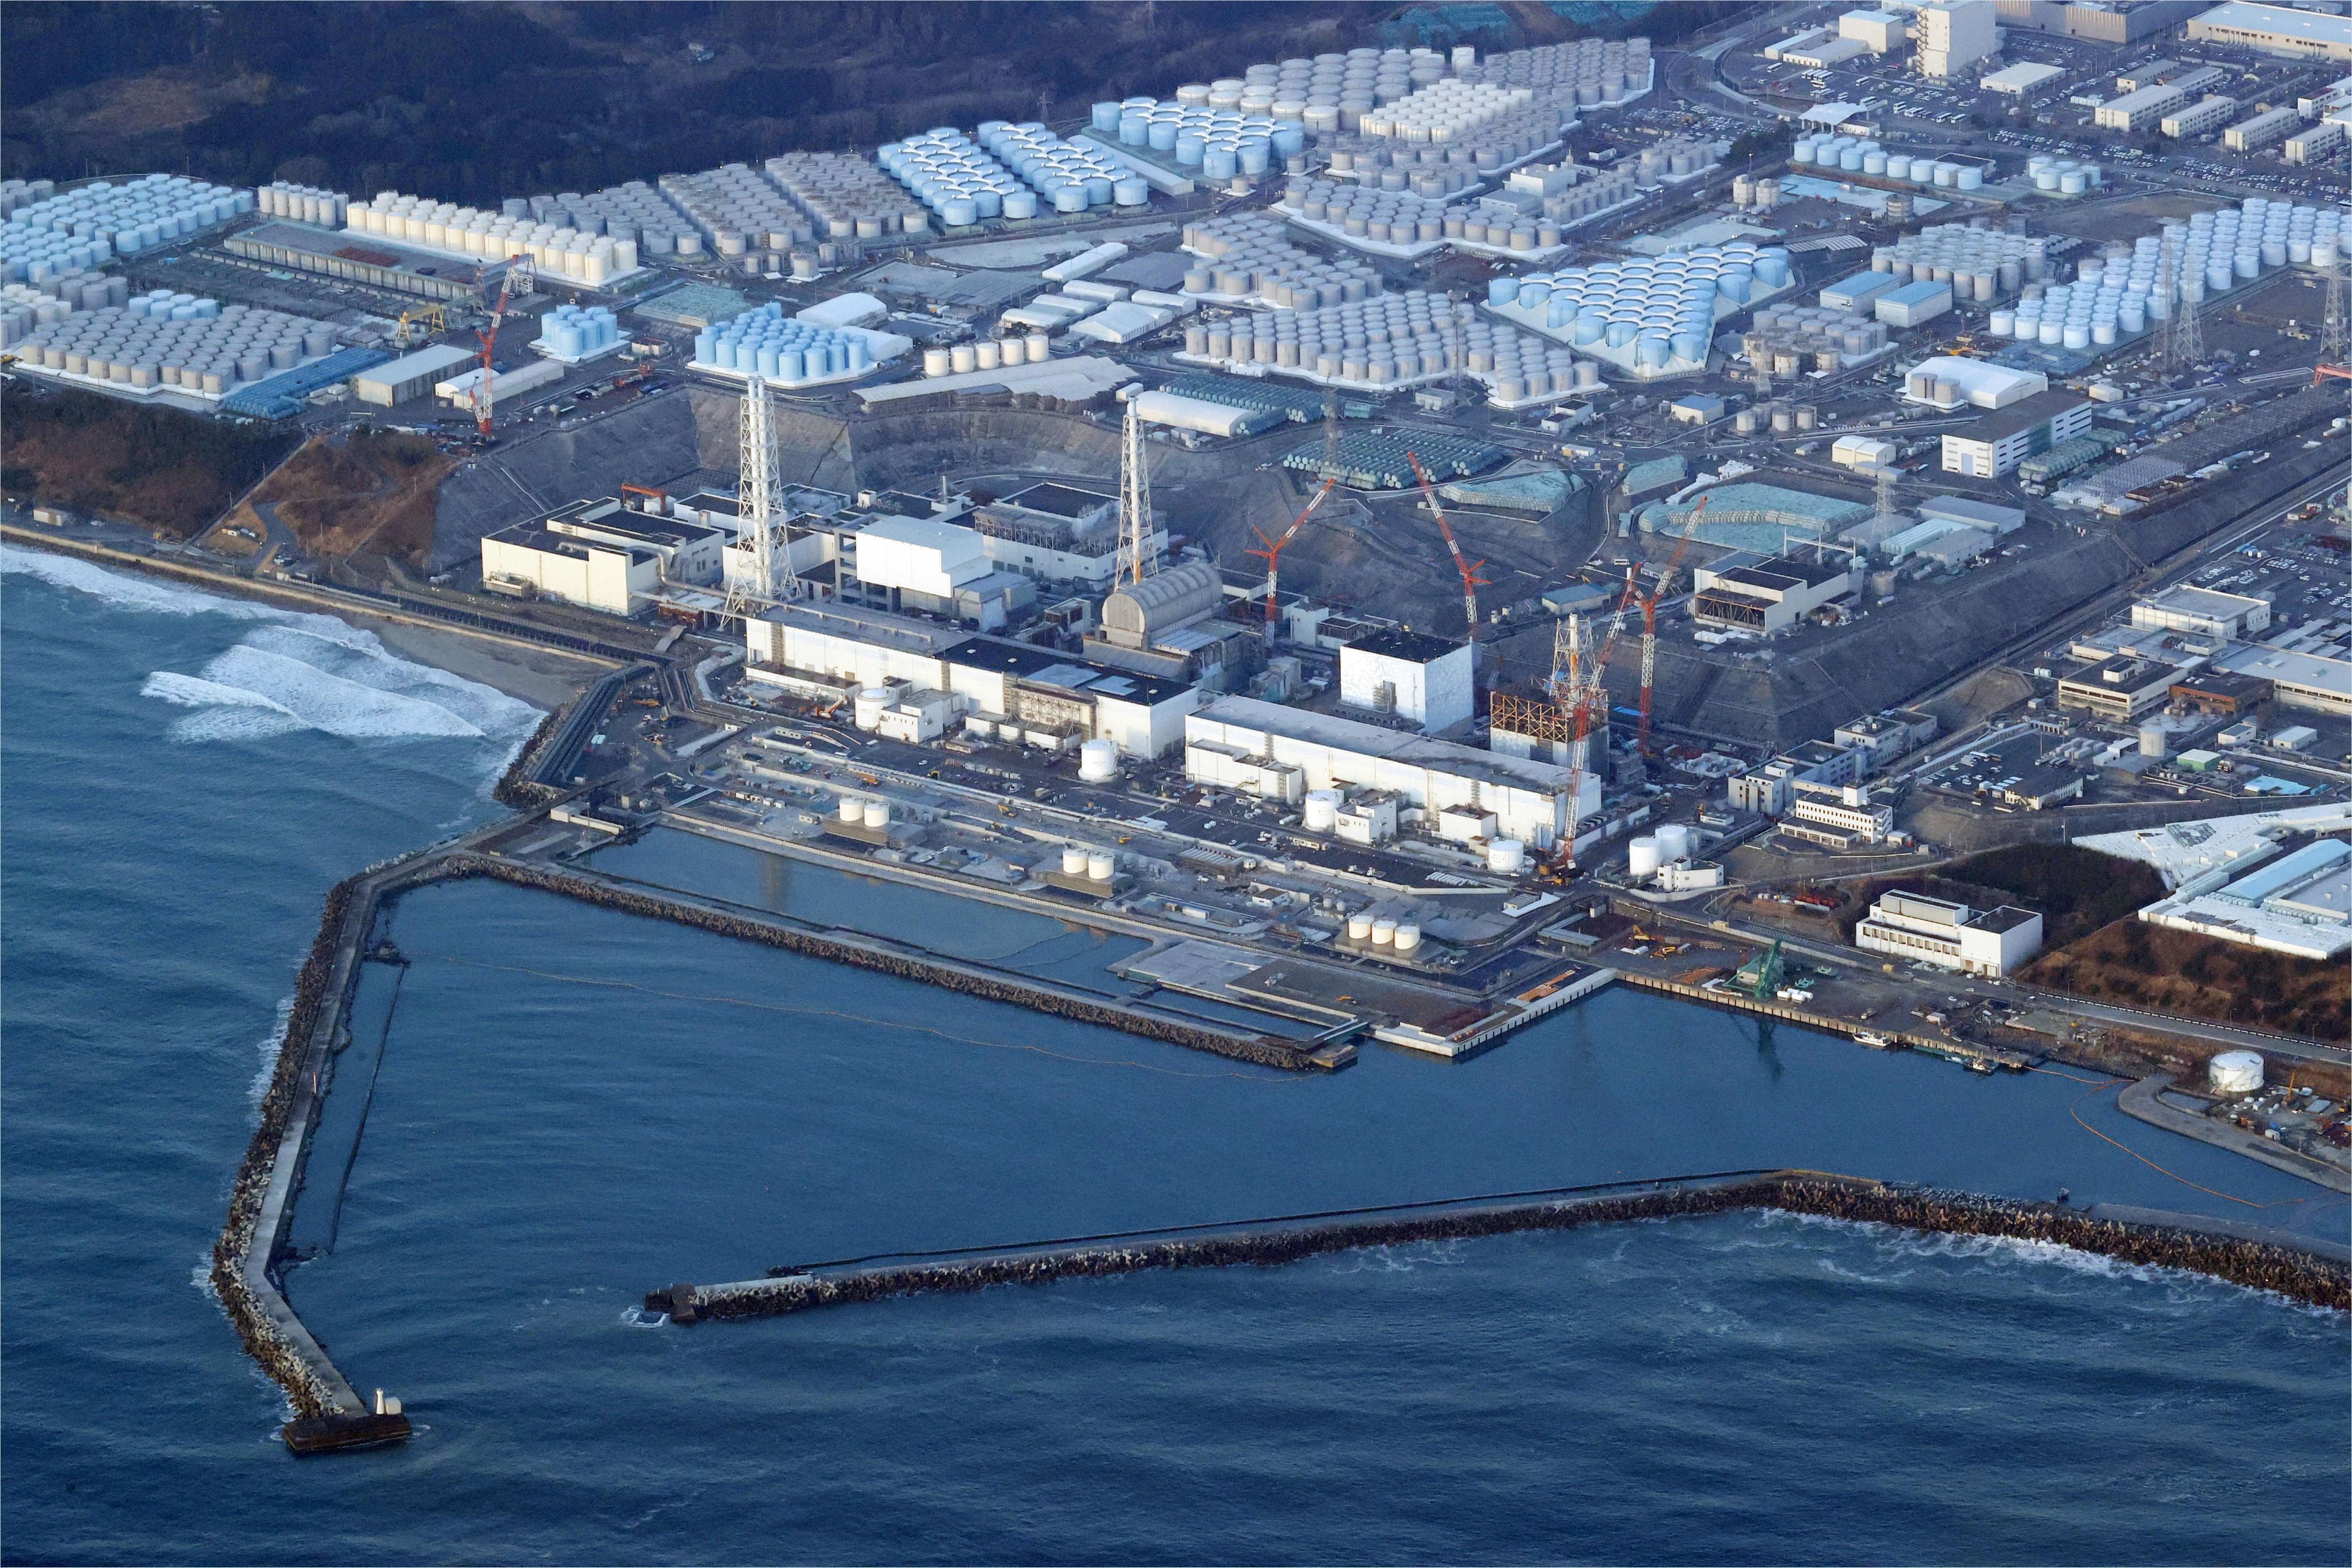 Corea del Sur desplegará 21 expertos en Japón para supervisar el plan de vertido de agua de Fukushima